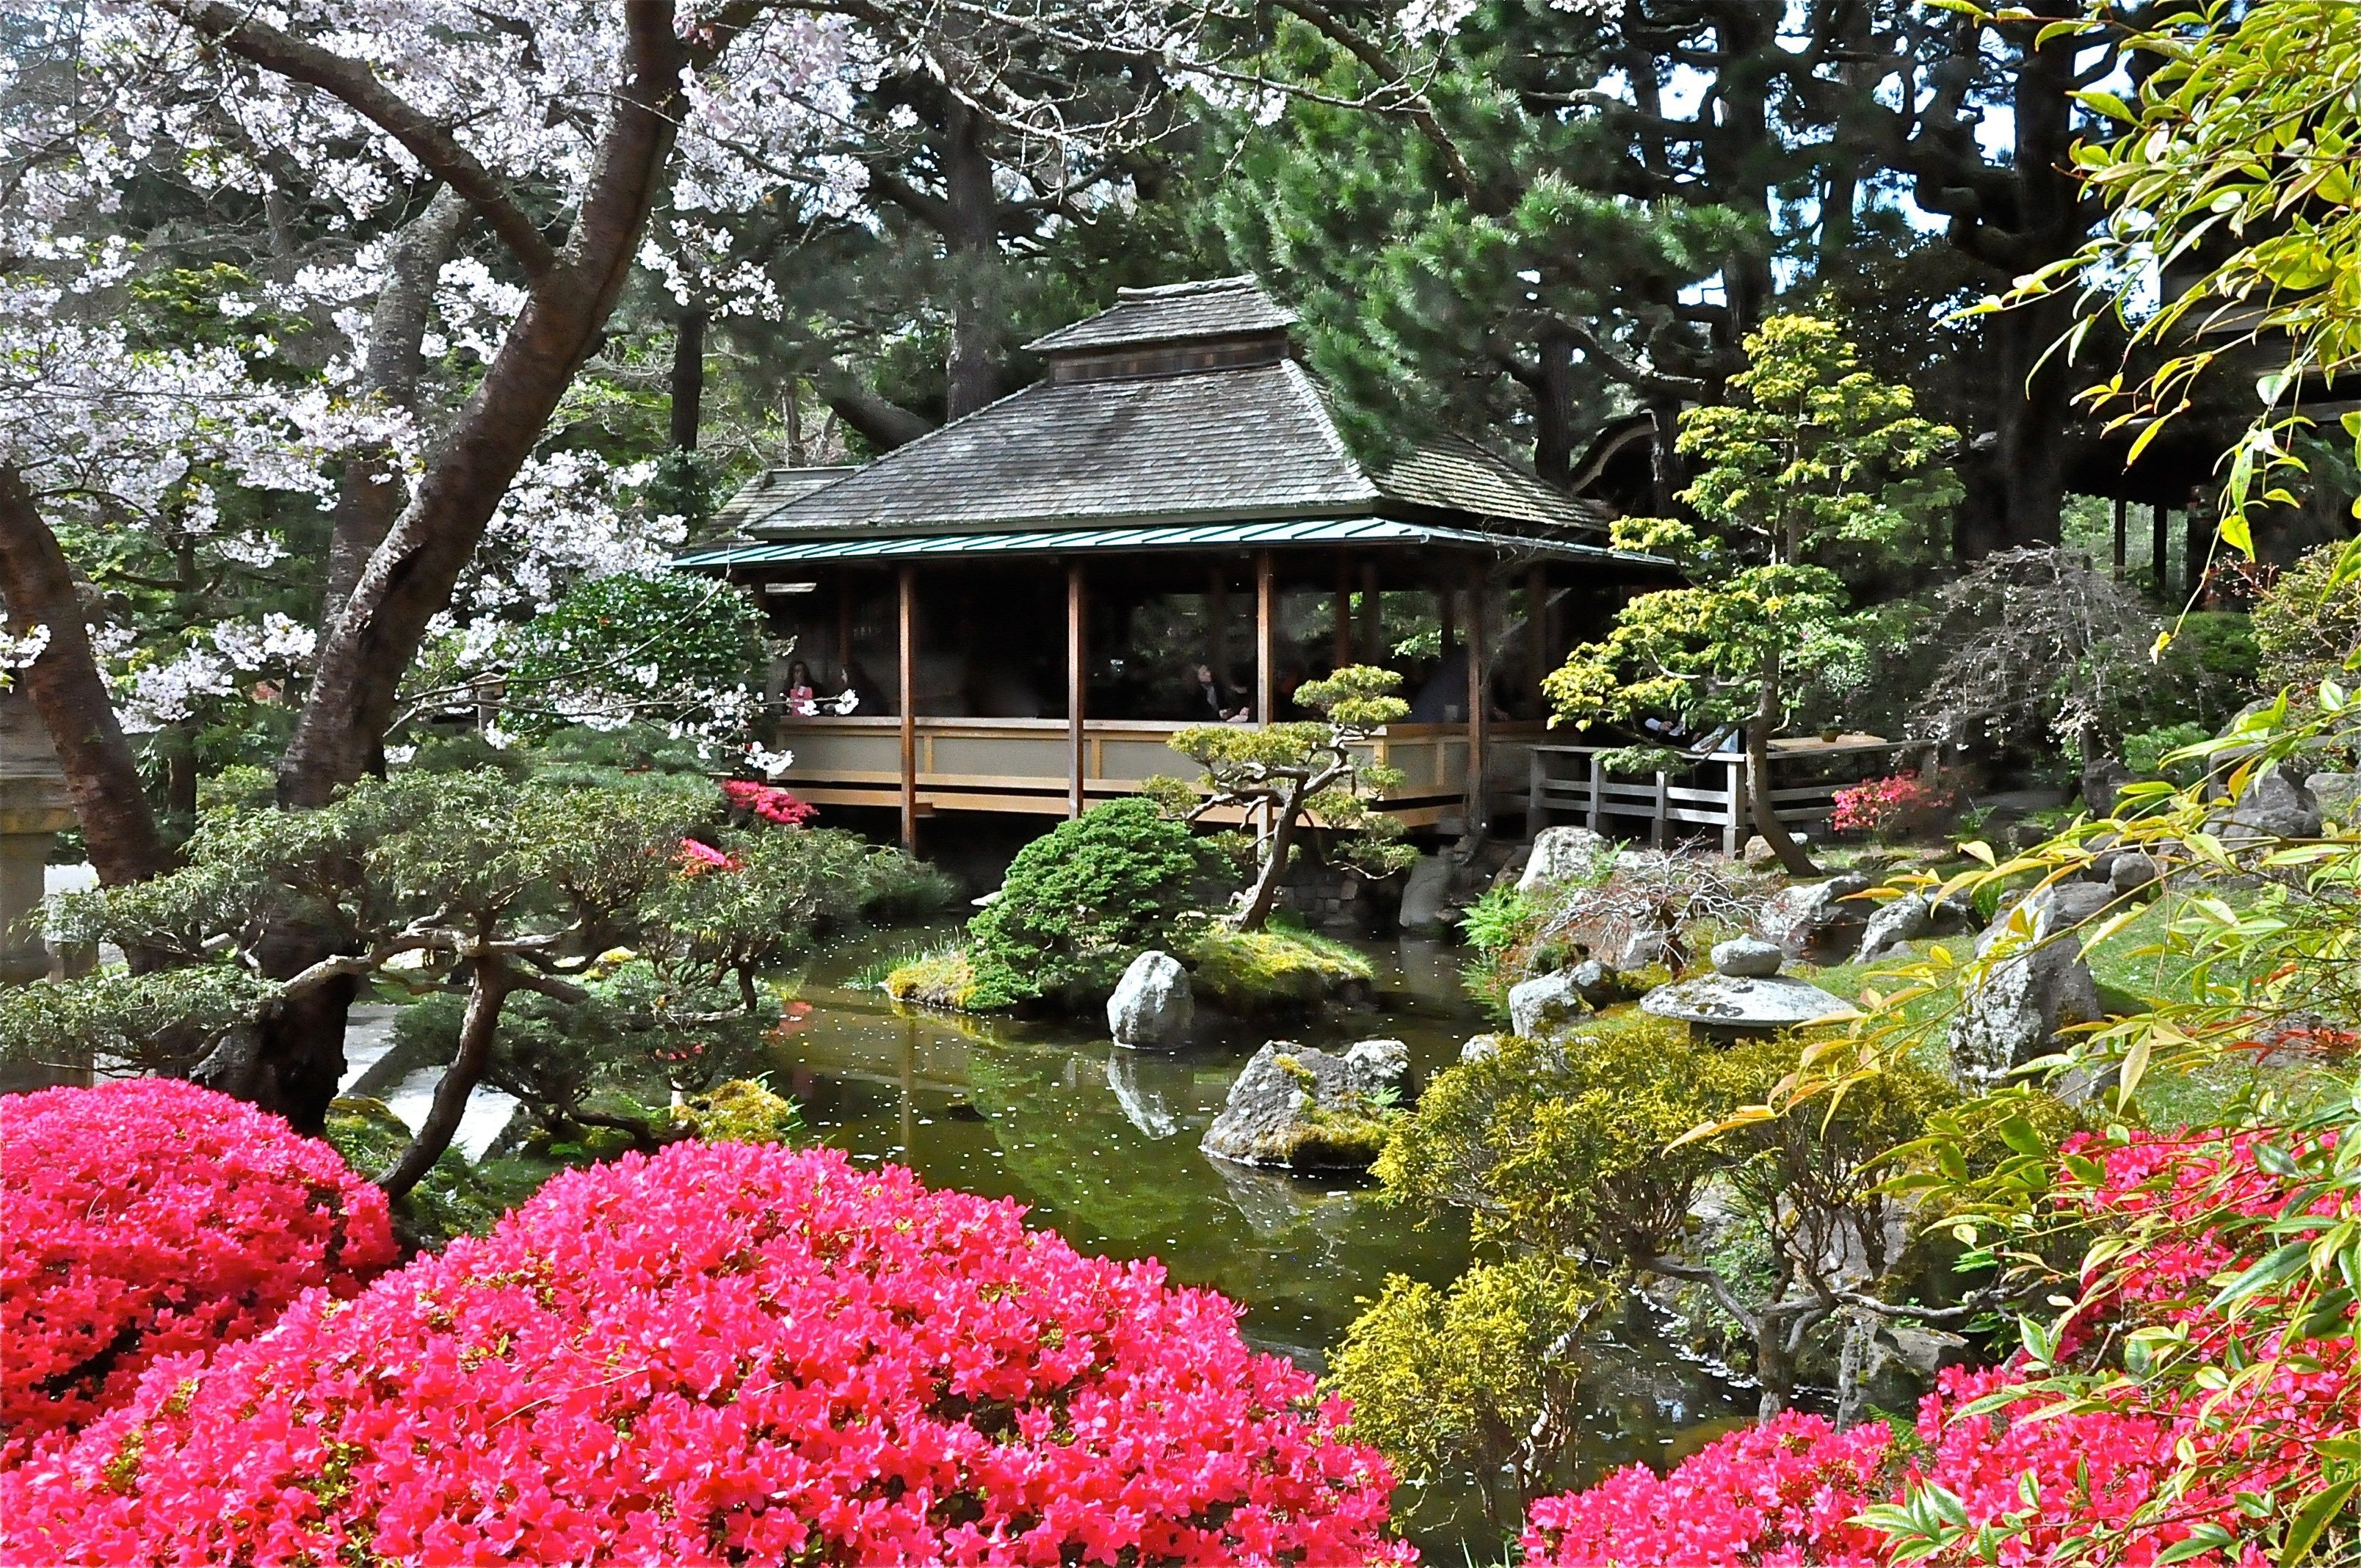 Забронировать столик в японском саду. Чайный сад Тянива в Японии. Японский чайный сад в Сан-Франциско. Дендра парк японский сад. Японский сад хиранива.